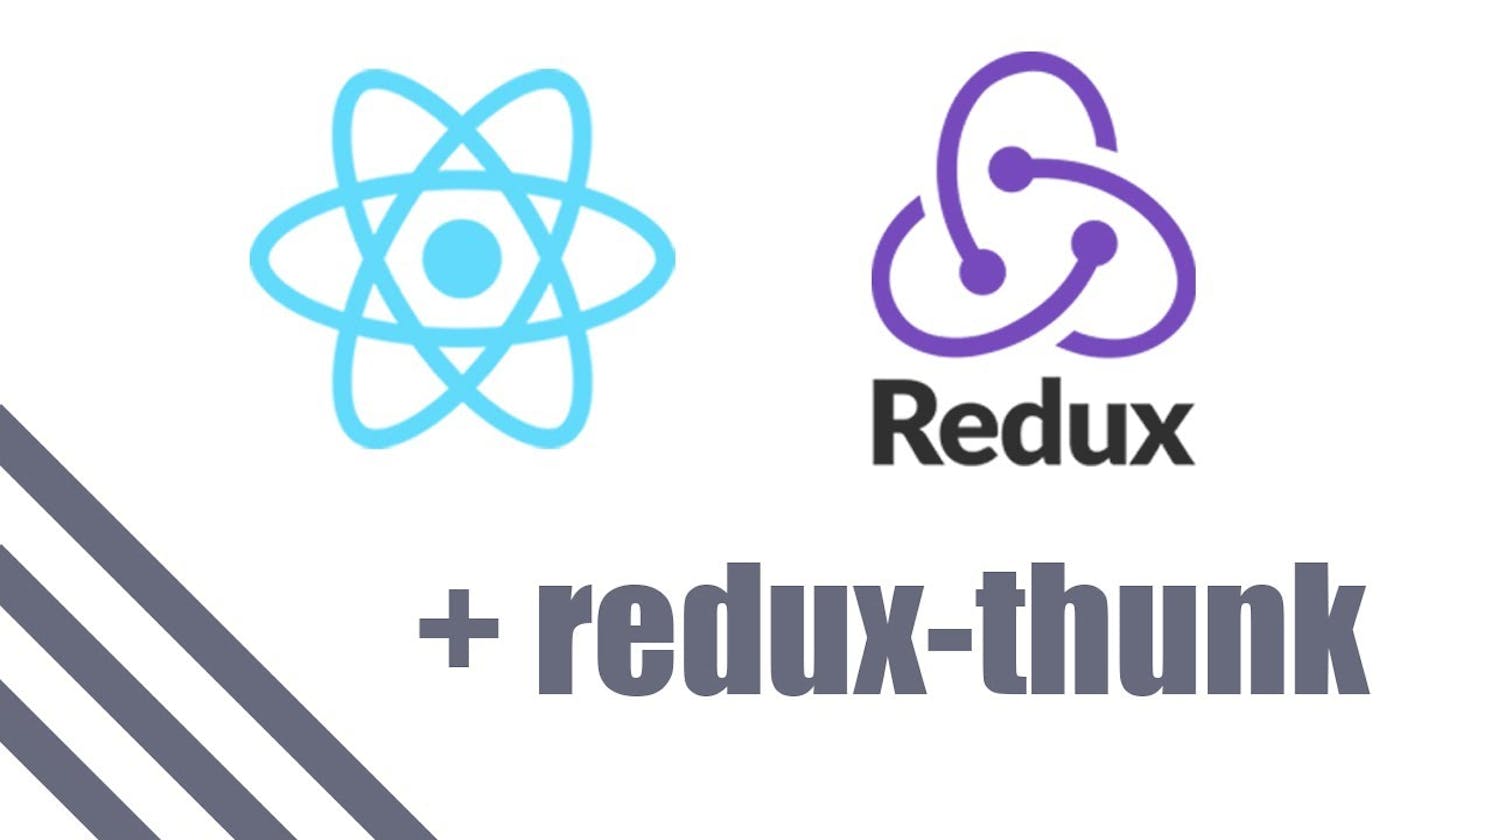 React + Redux +Thunk